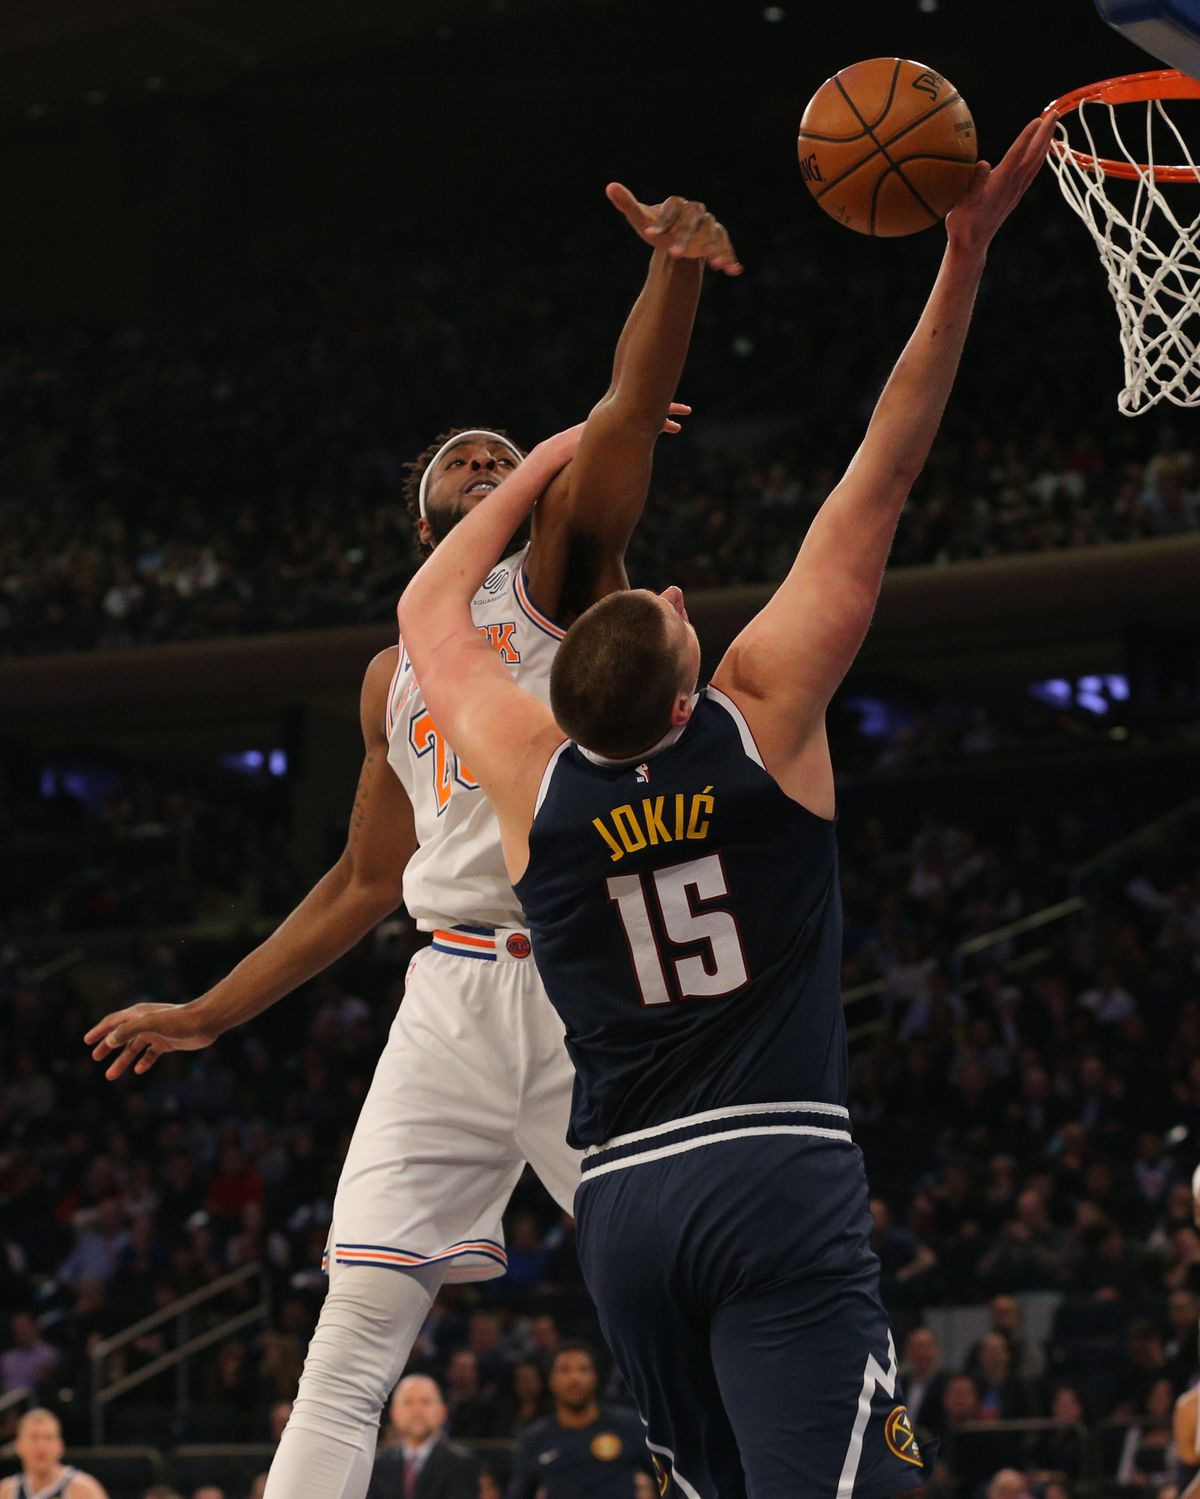 NBA: Denver Nuggets at New York Knicks